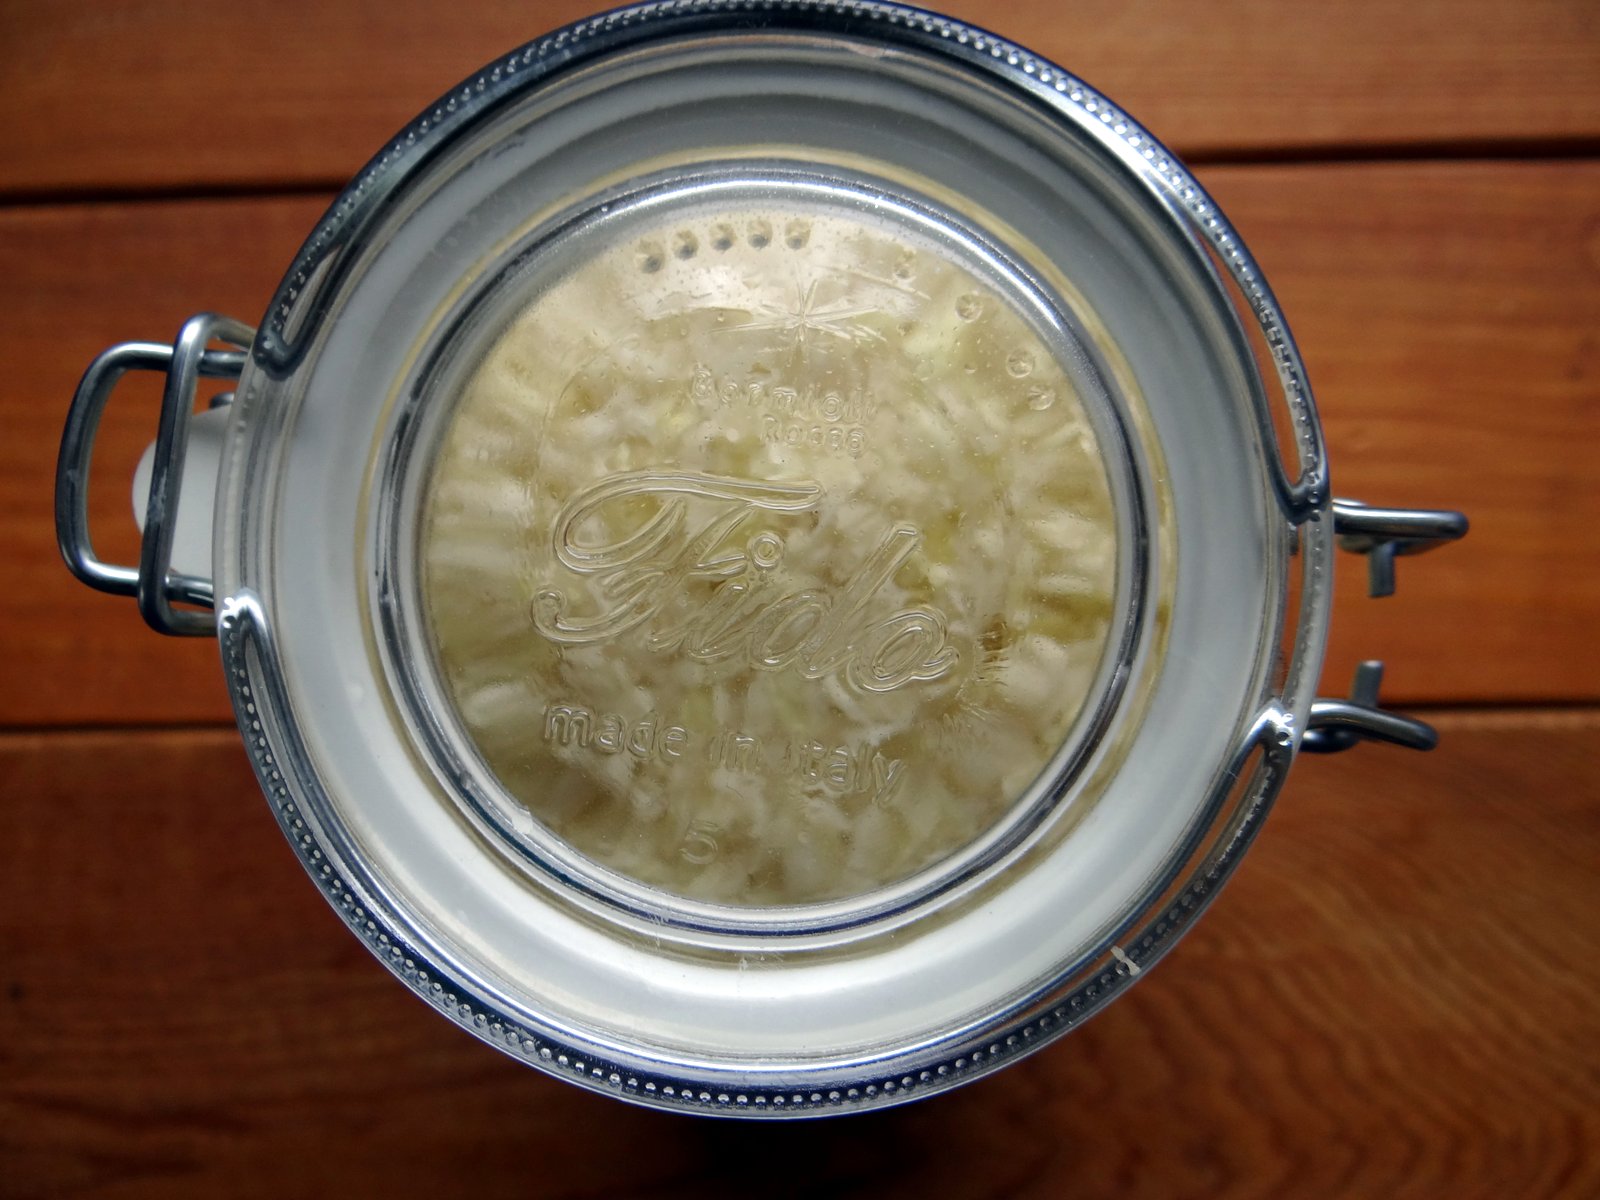 top of a fido jar with a batch of sauerkraut inside